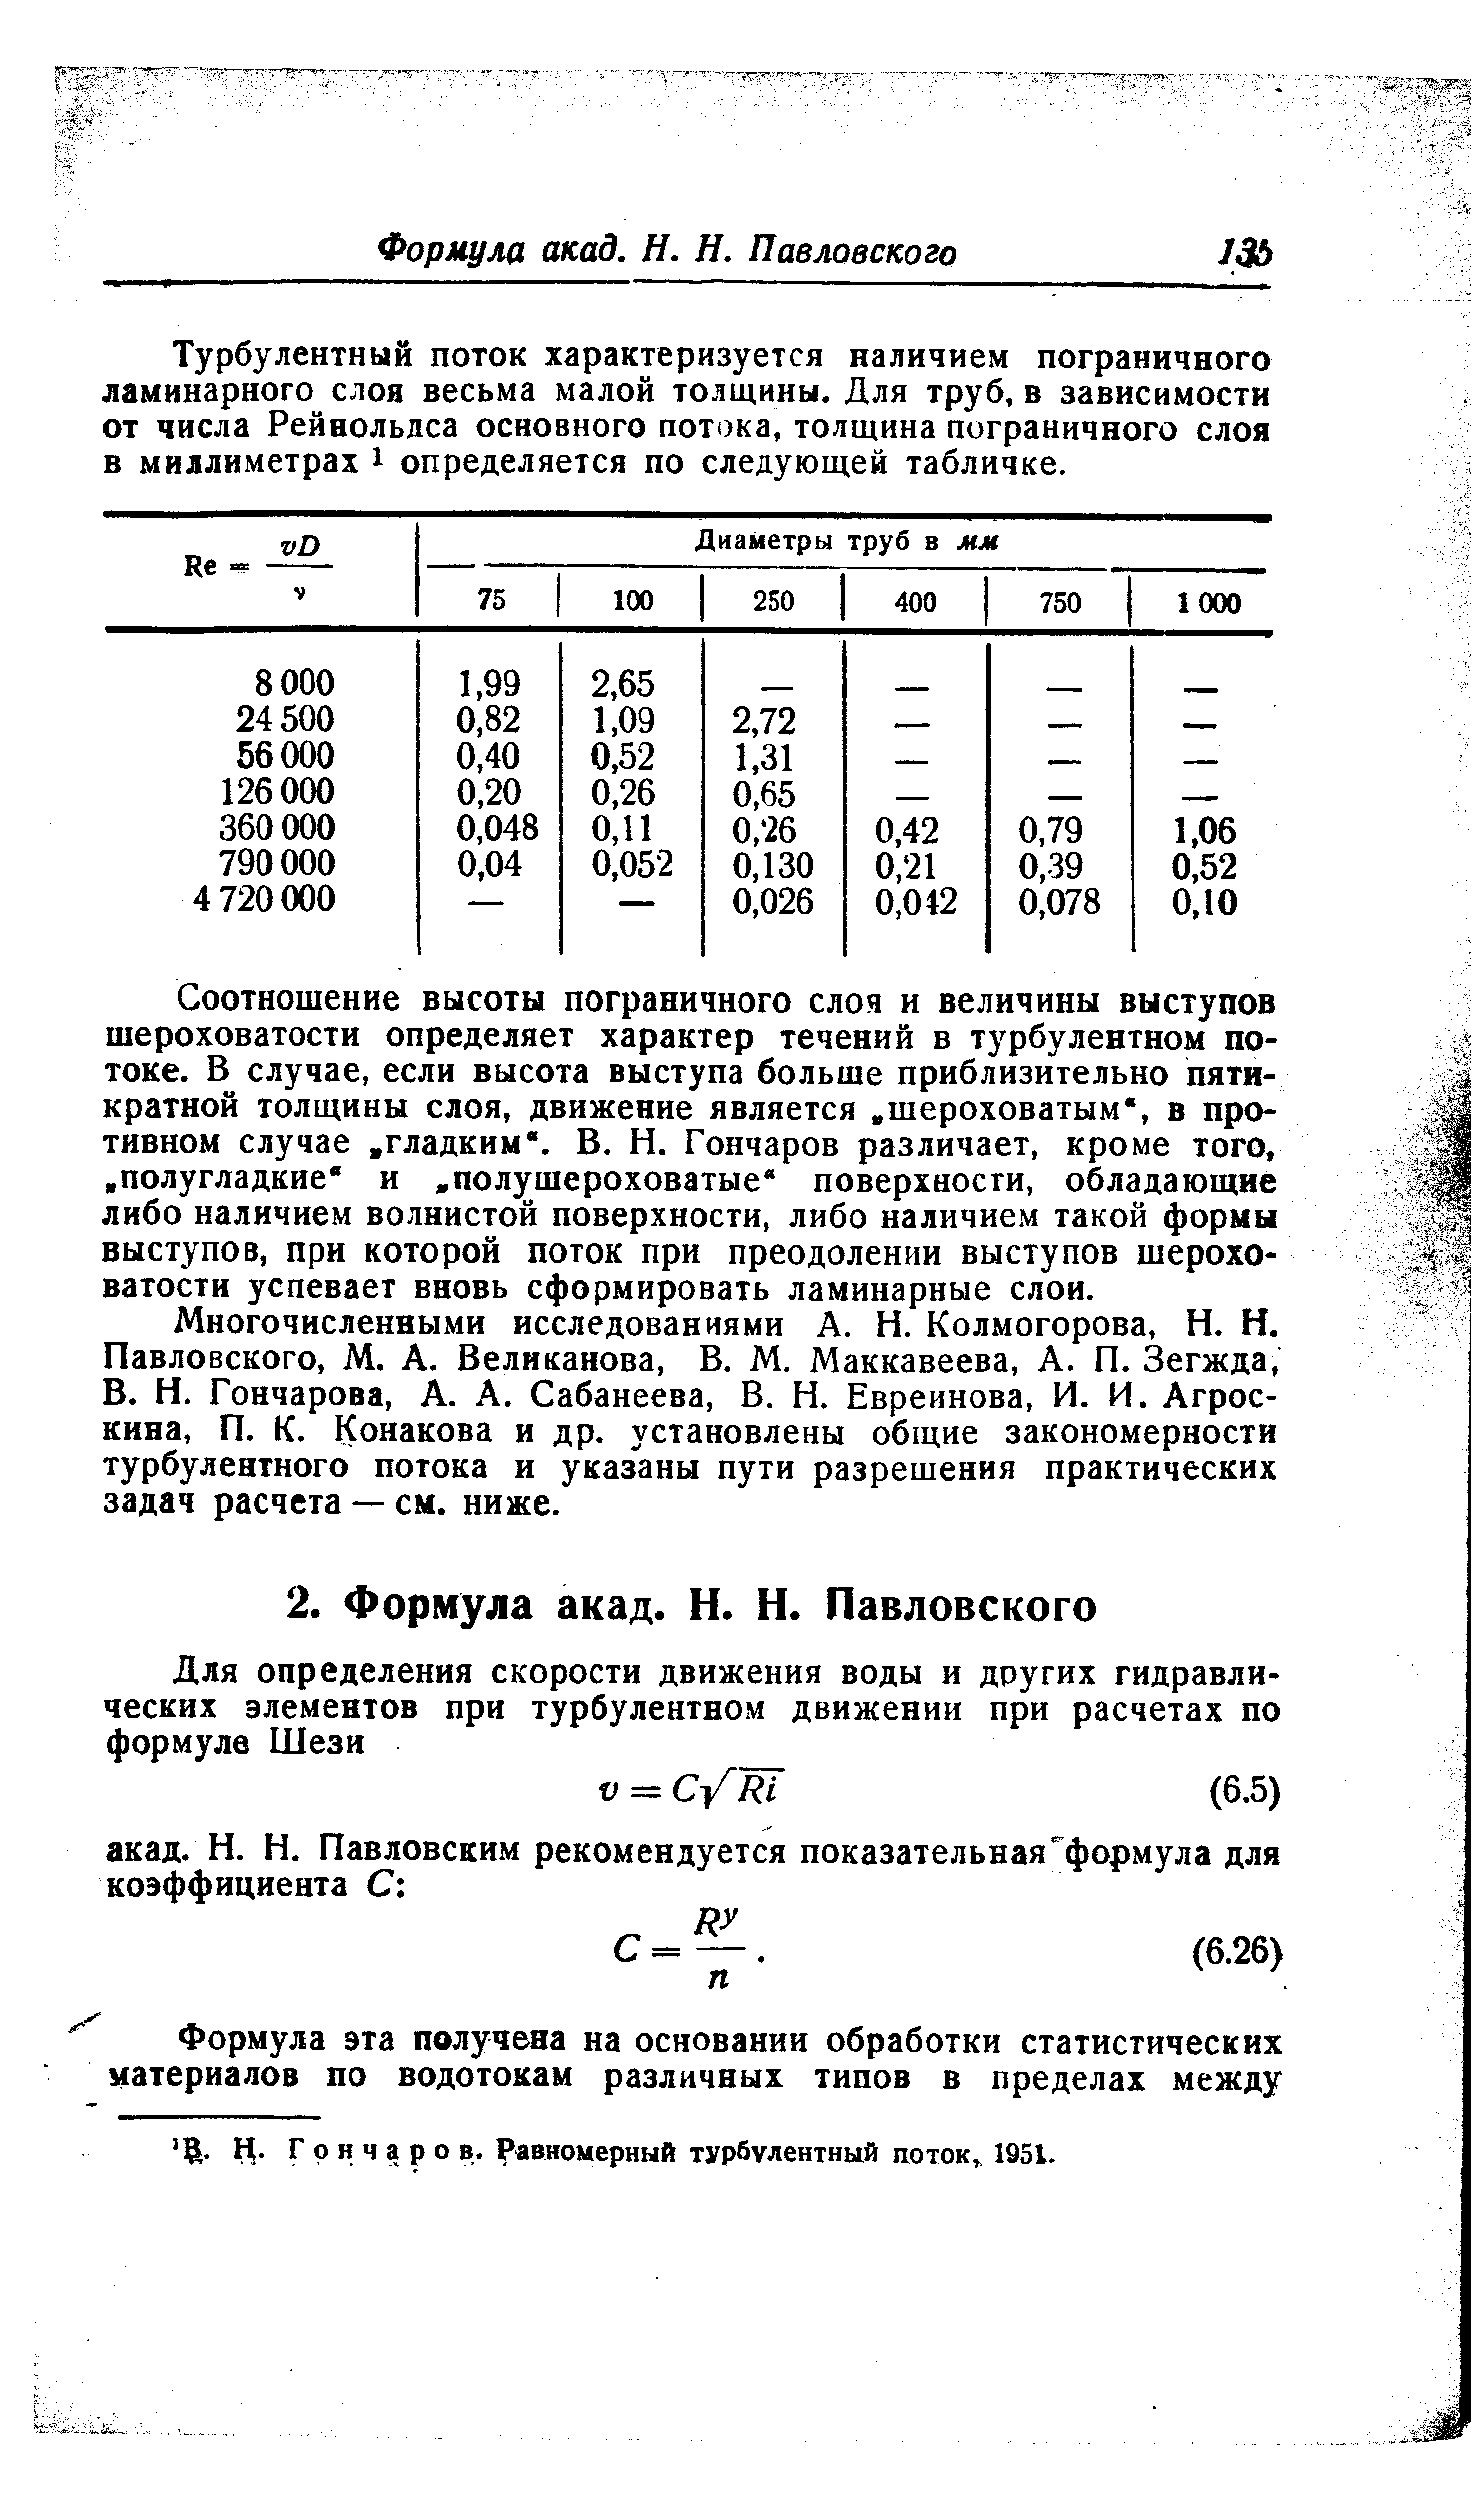 Н- Гончаров. Равномерный турбулентный поток 1951.
